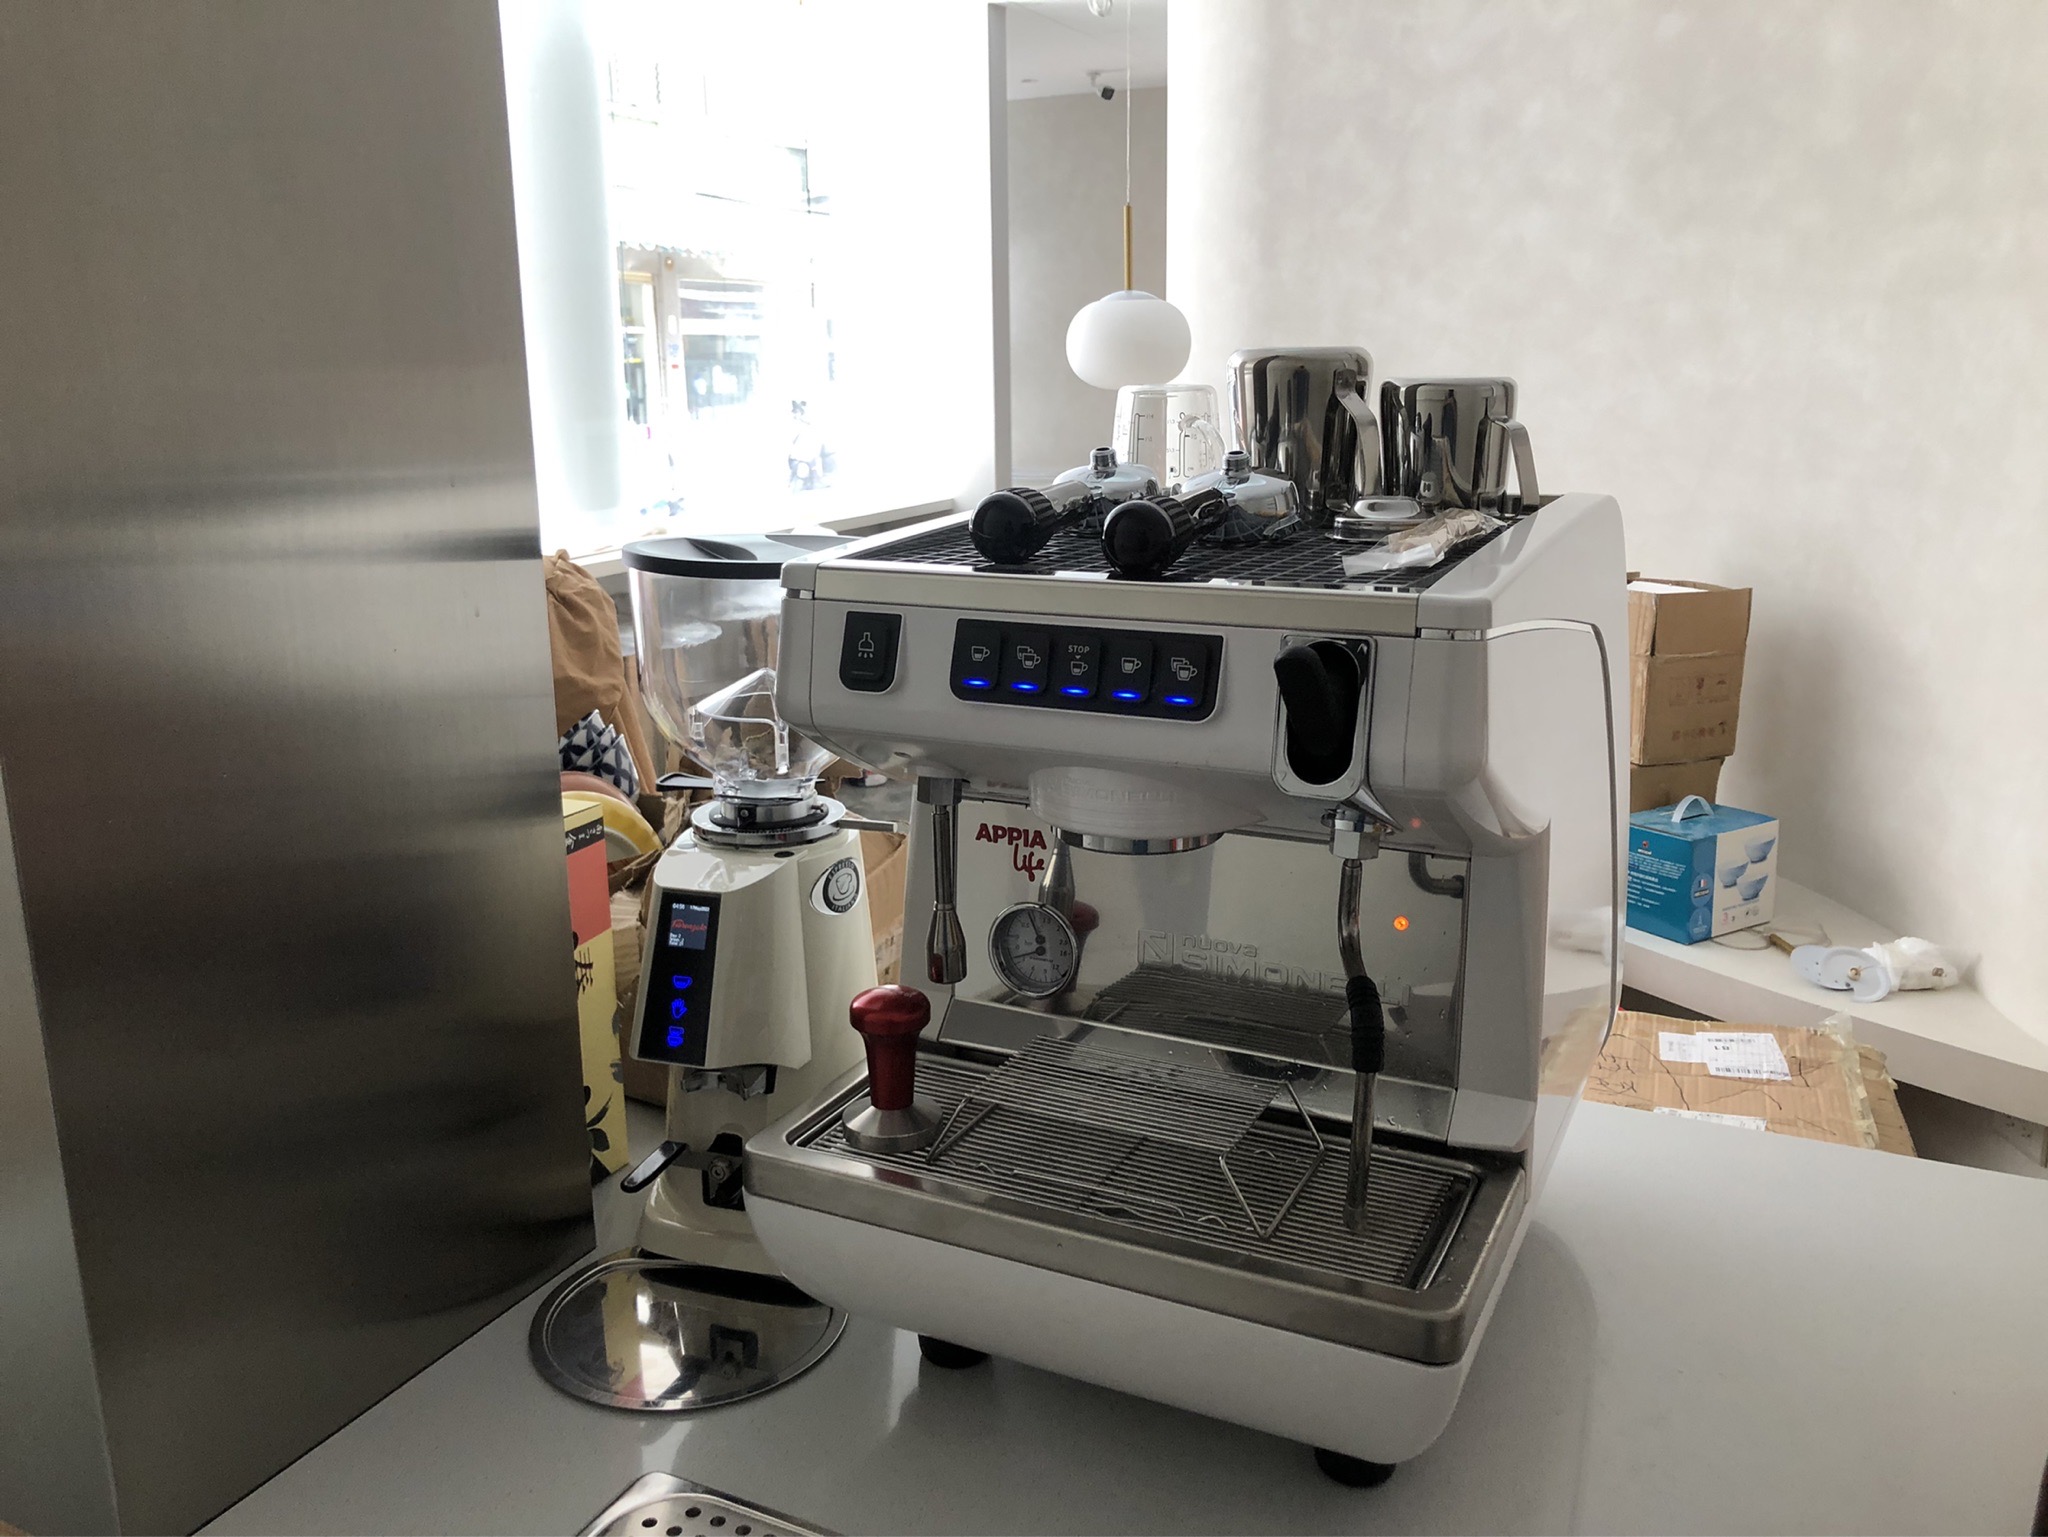 高雄 梨吧製造所 APPIA LIFE單 F64e定量磨豆機 咖啡吧台設備 半自動咖啡機 買賣 維修 保養